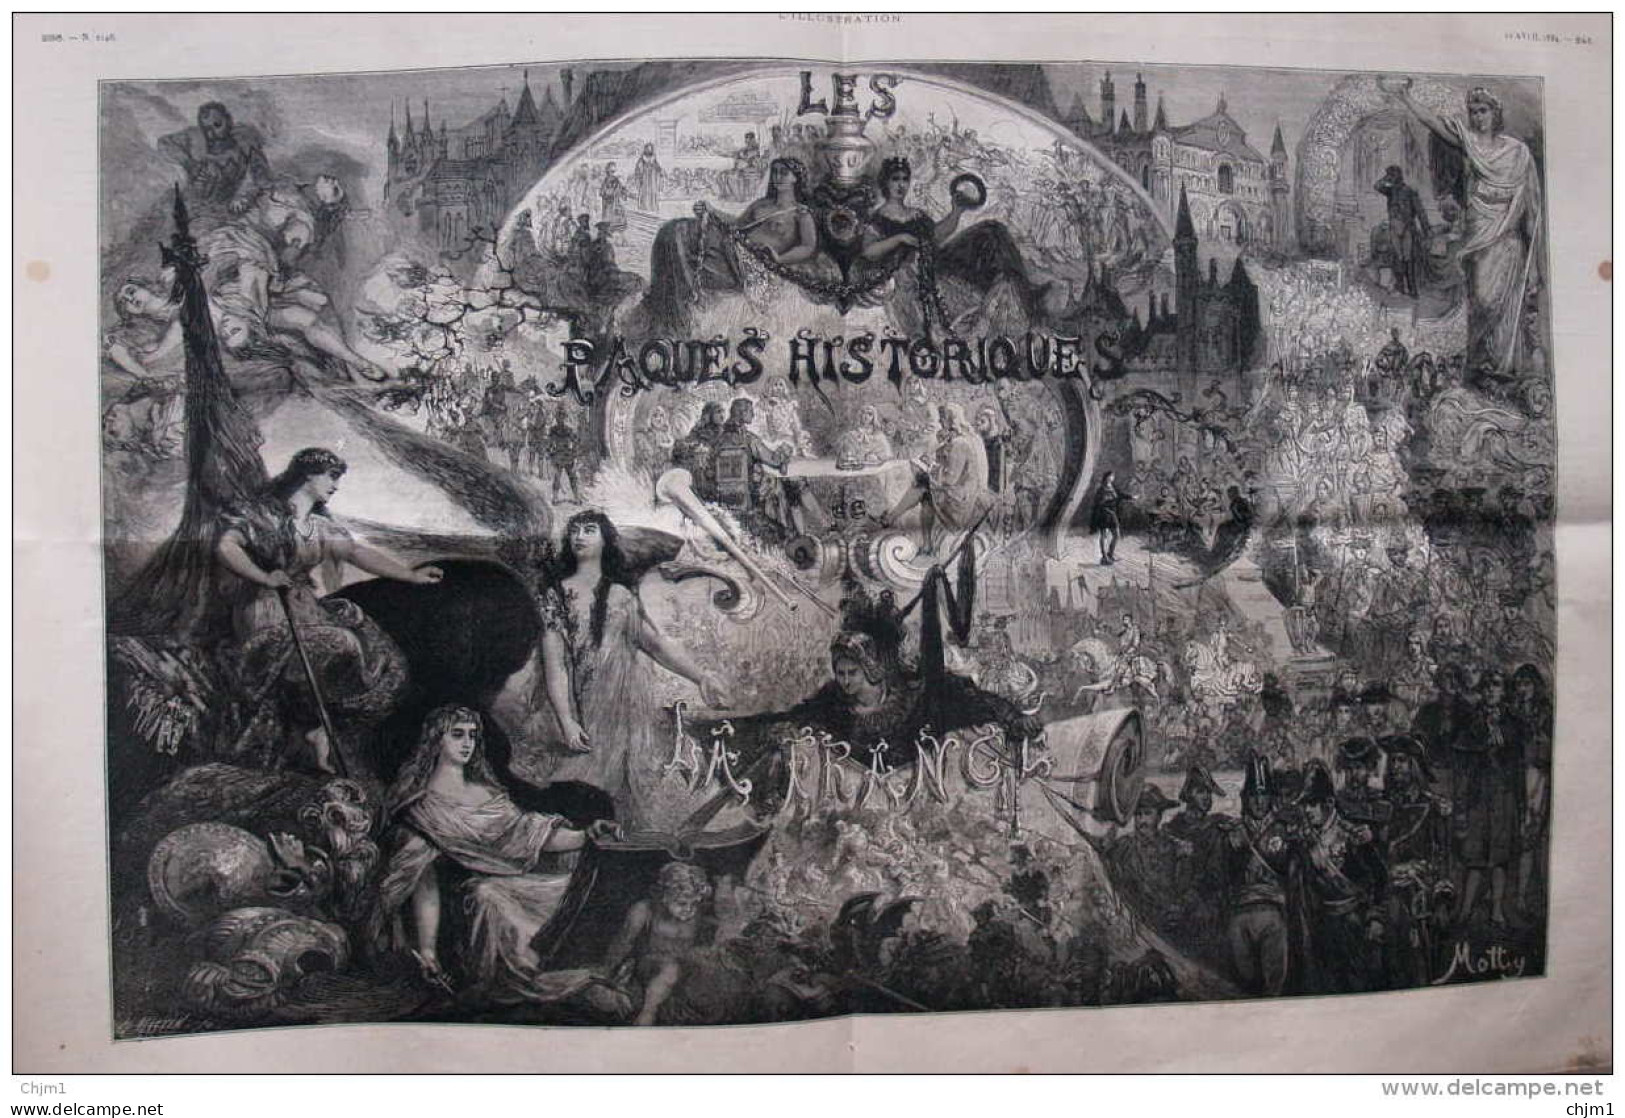 Les Paques Historiques - Historische Ostern - Page Original - 1884 - Historical Documents